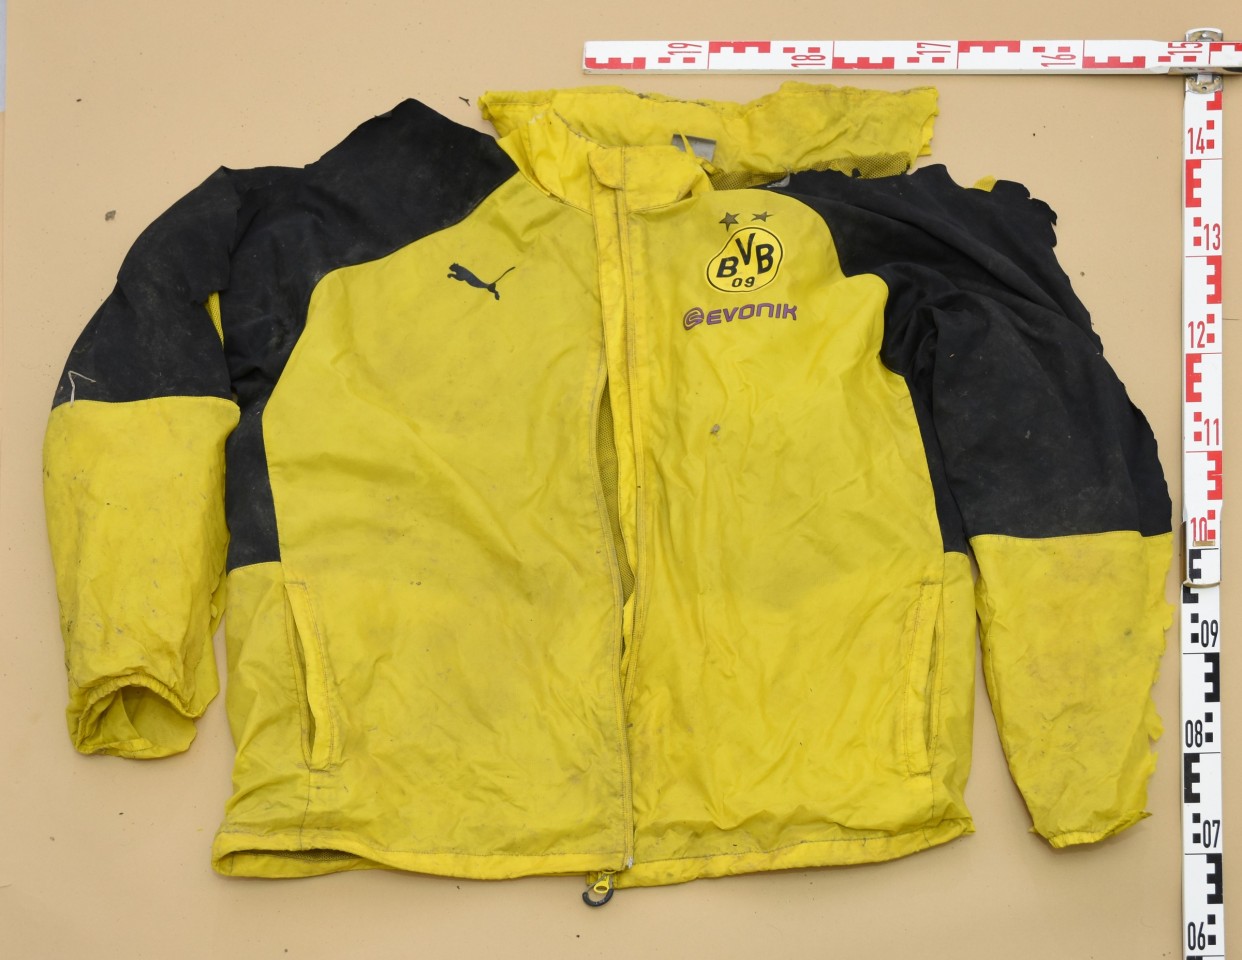 Der Verstorbene trug diese BVB-Jacke.